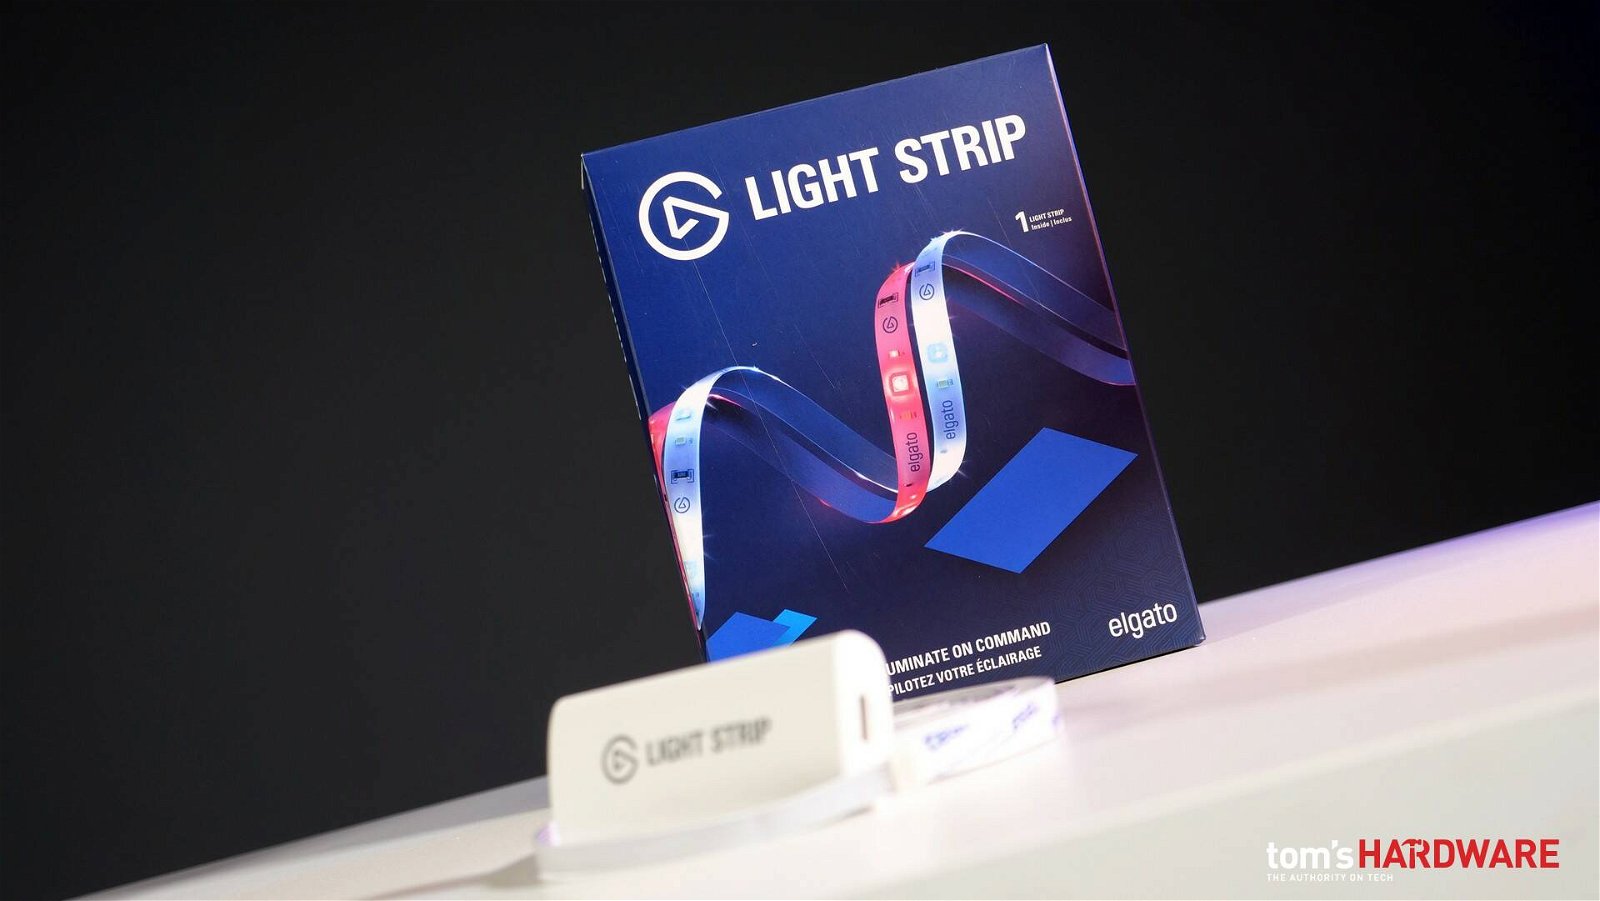 Immagine di Elgato Light Strip, le nuove strisce LED per streamer e non solo